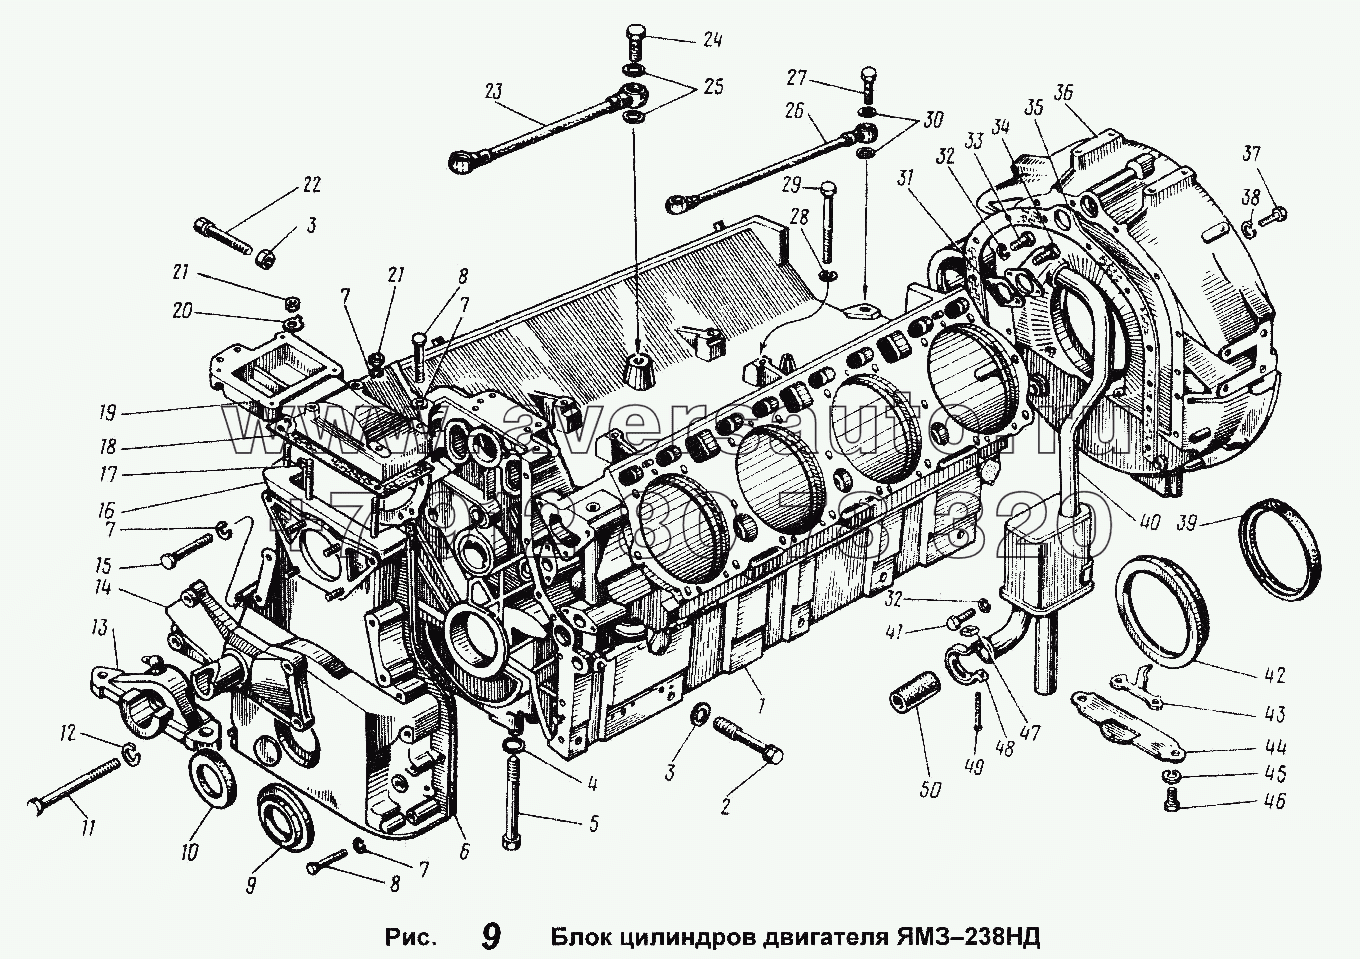 Блок цилиндров двигателя ЯМЗ-238НД